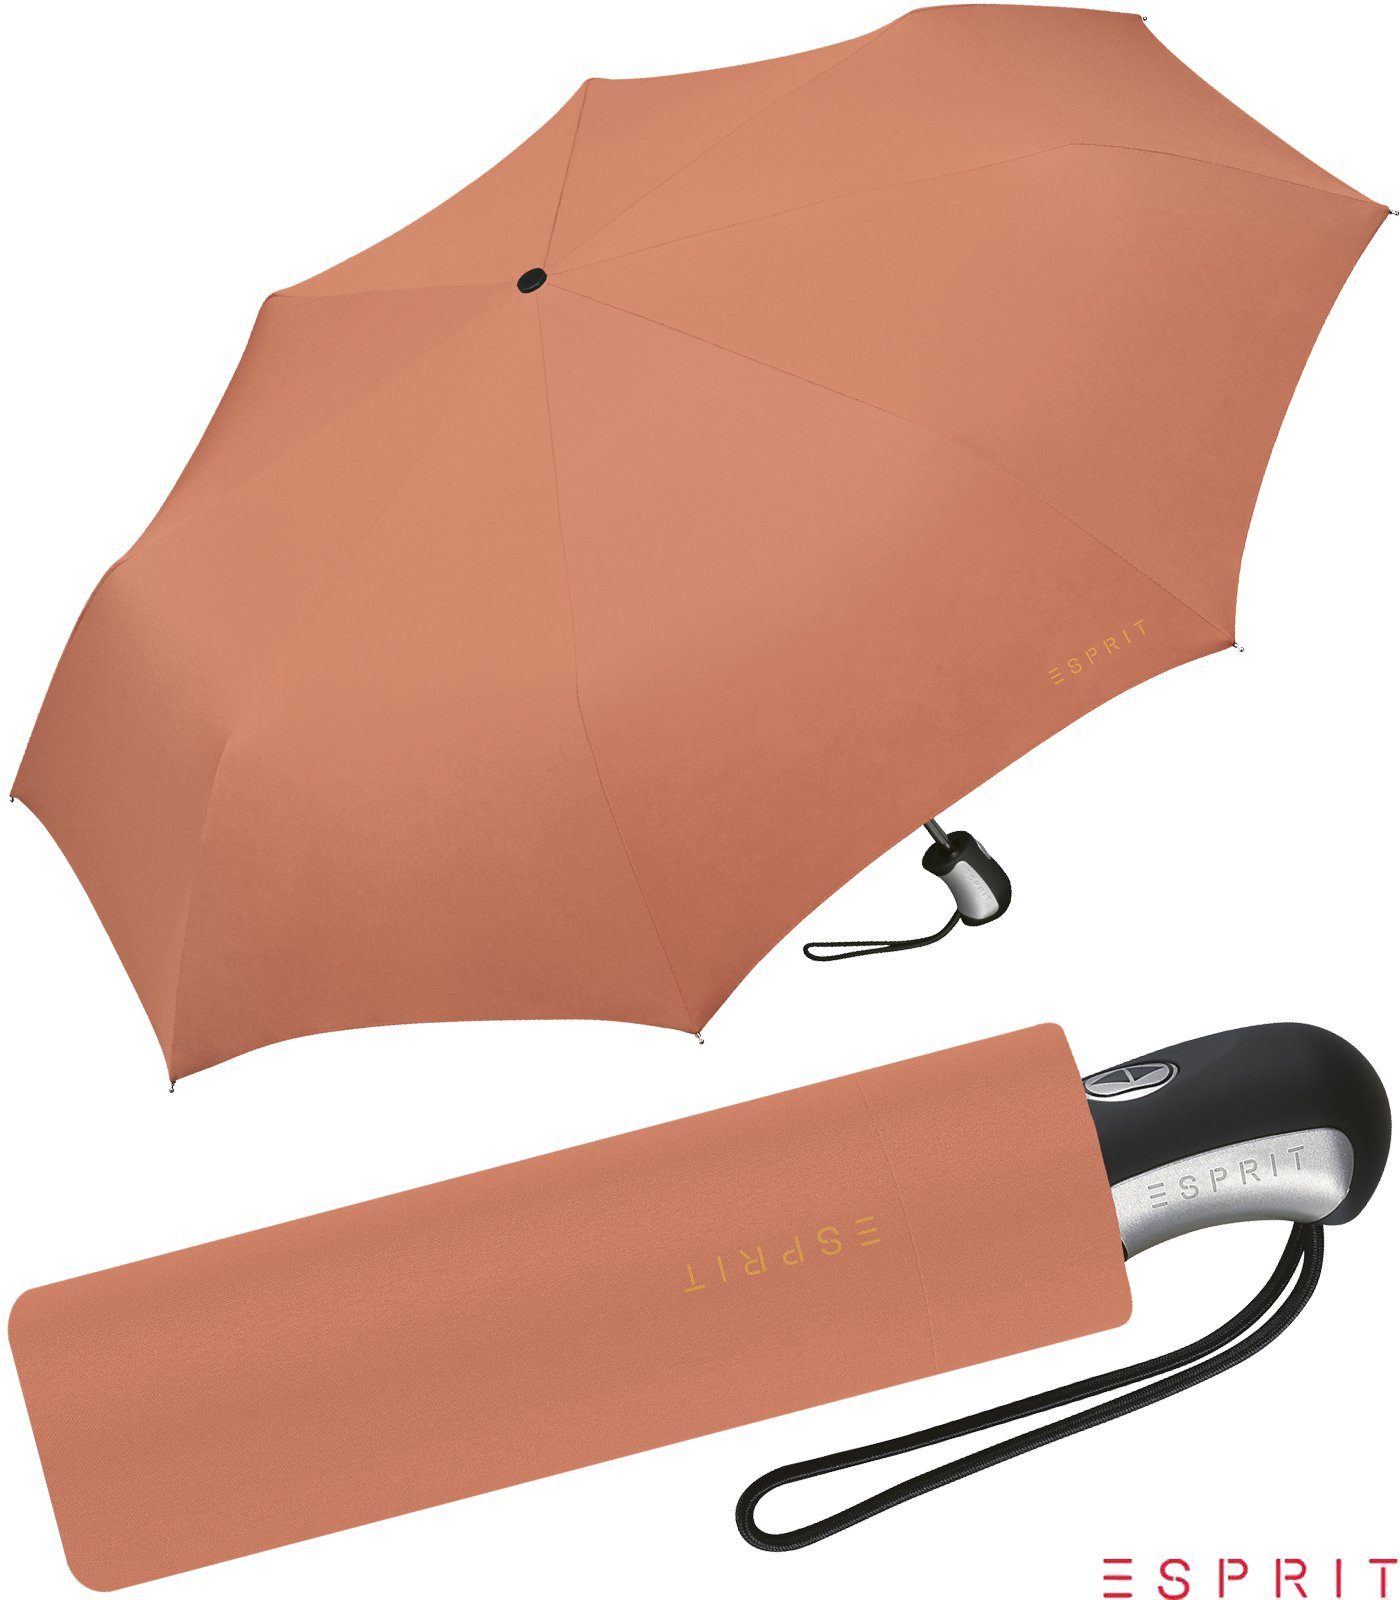 Esprit Taschenregenschirm schöner Schirm für Damen mit Auf-Zu Automatik, in kräftigen Farben - apricot brandy orange